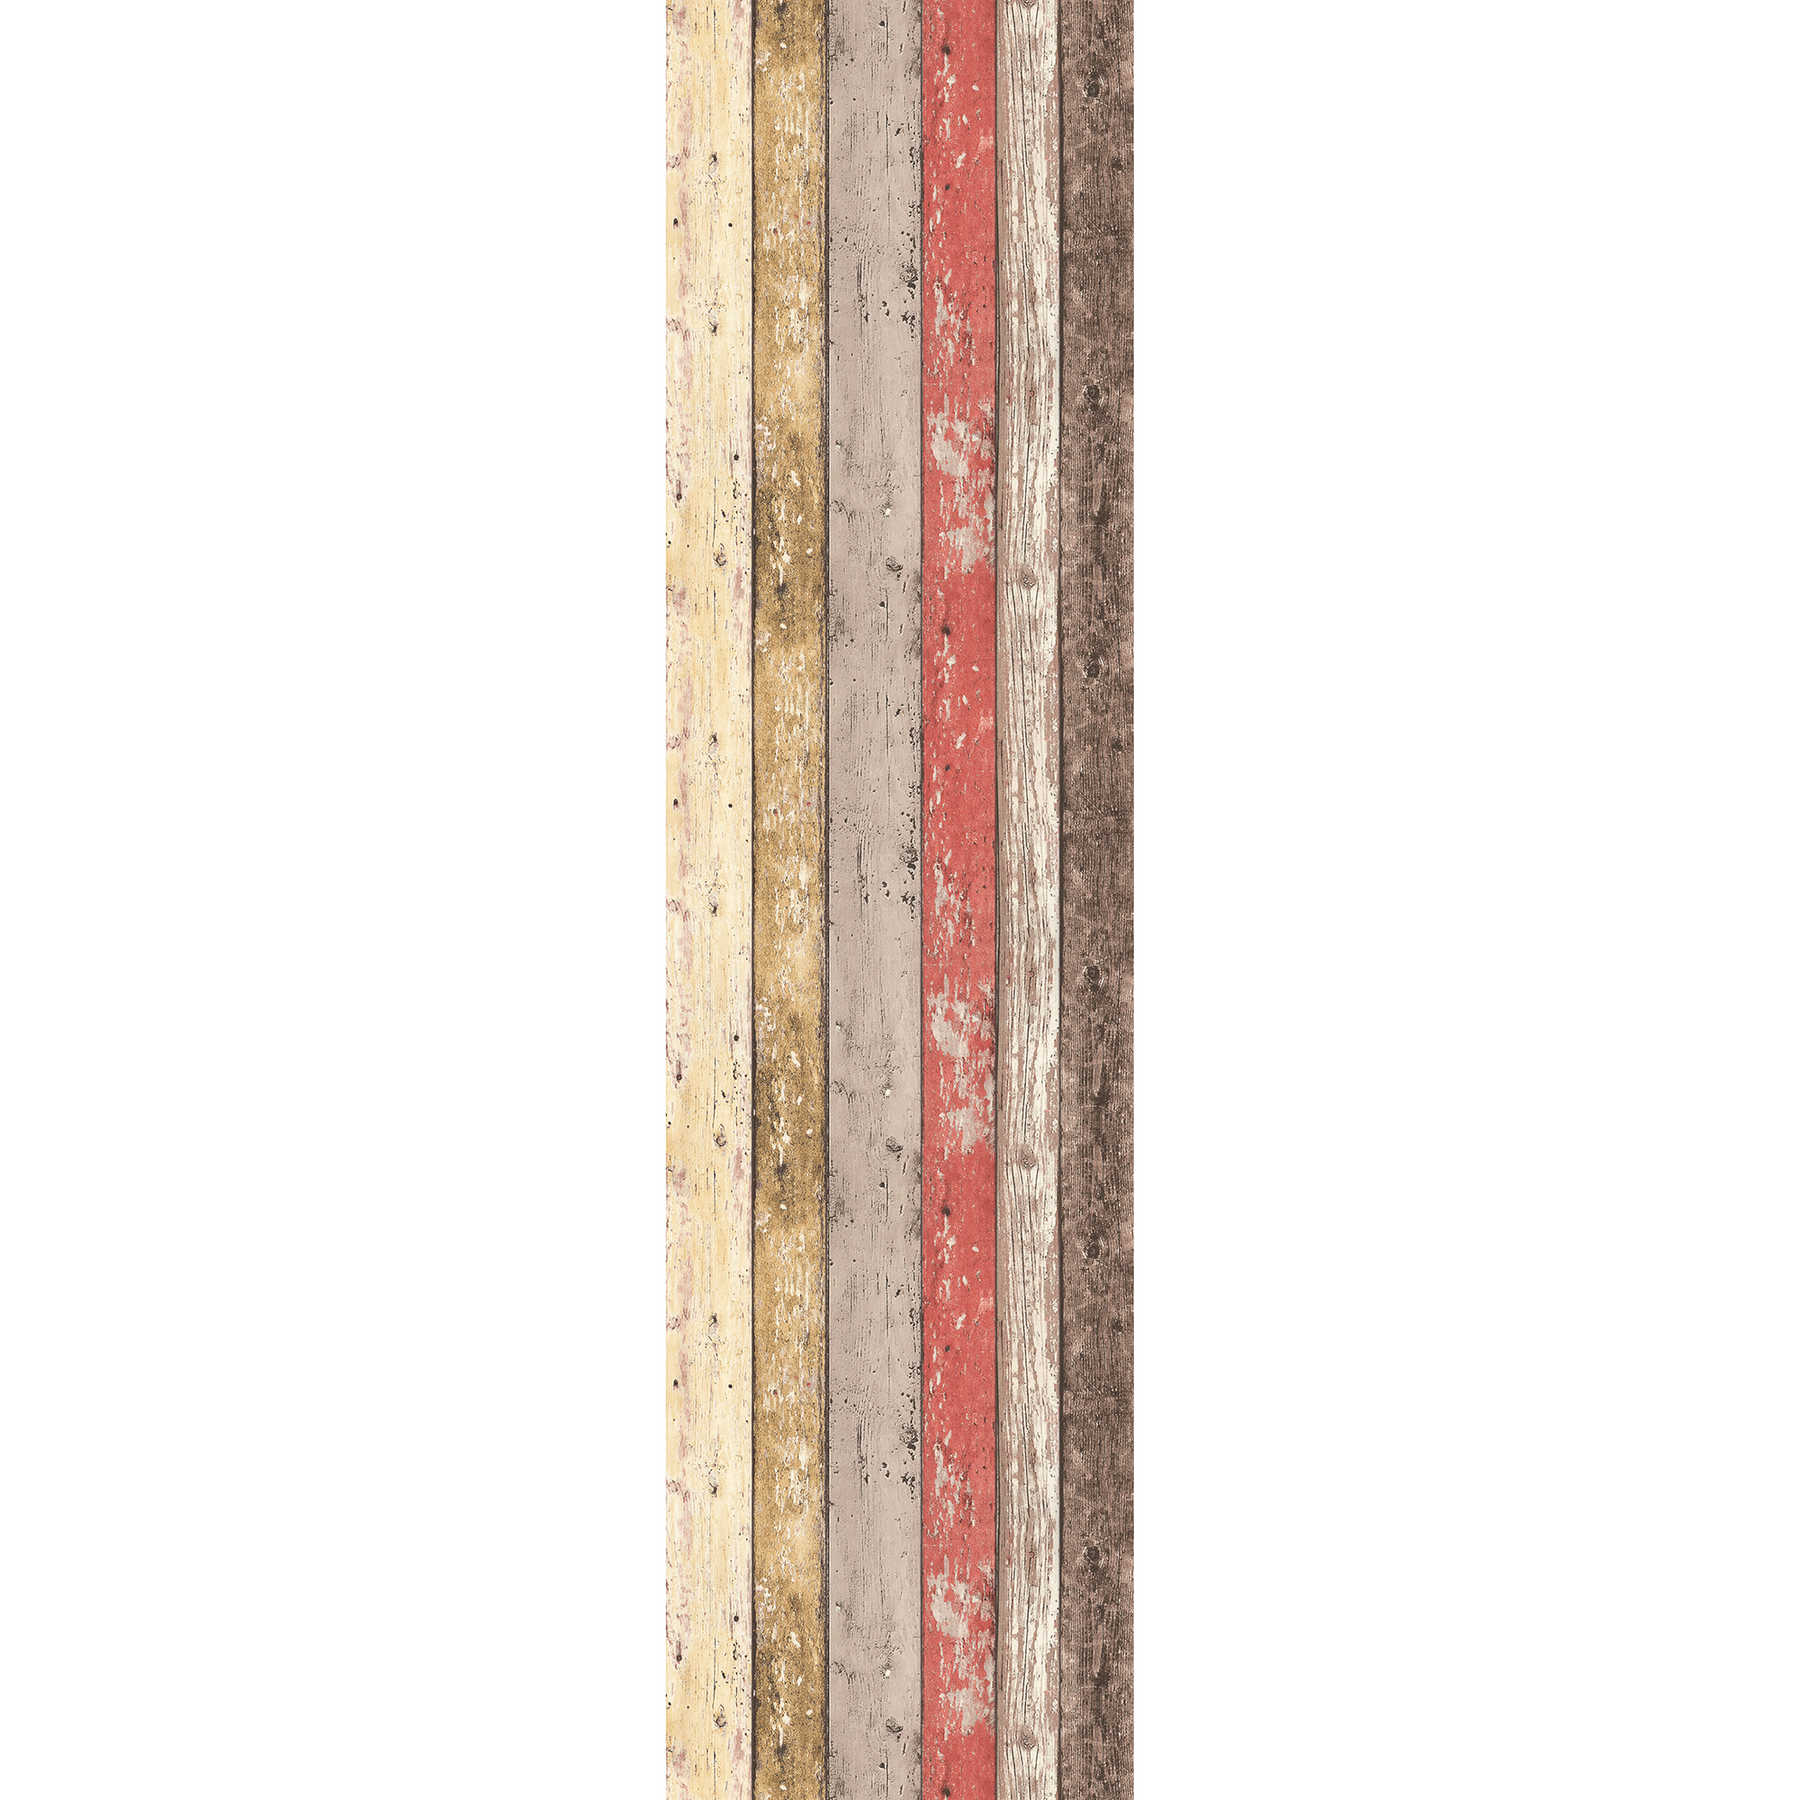             Vliestapete Holz Bretter im Shabby Chic Stil – Braun, Rot
        